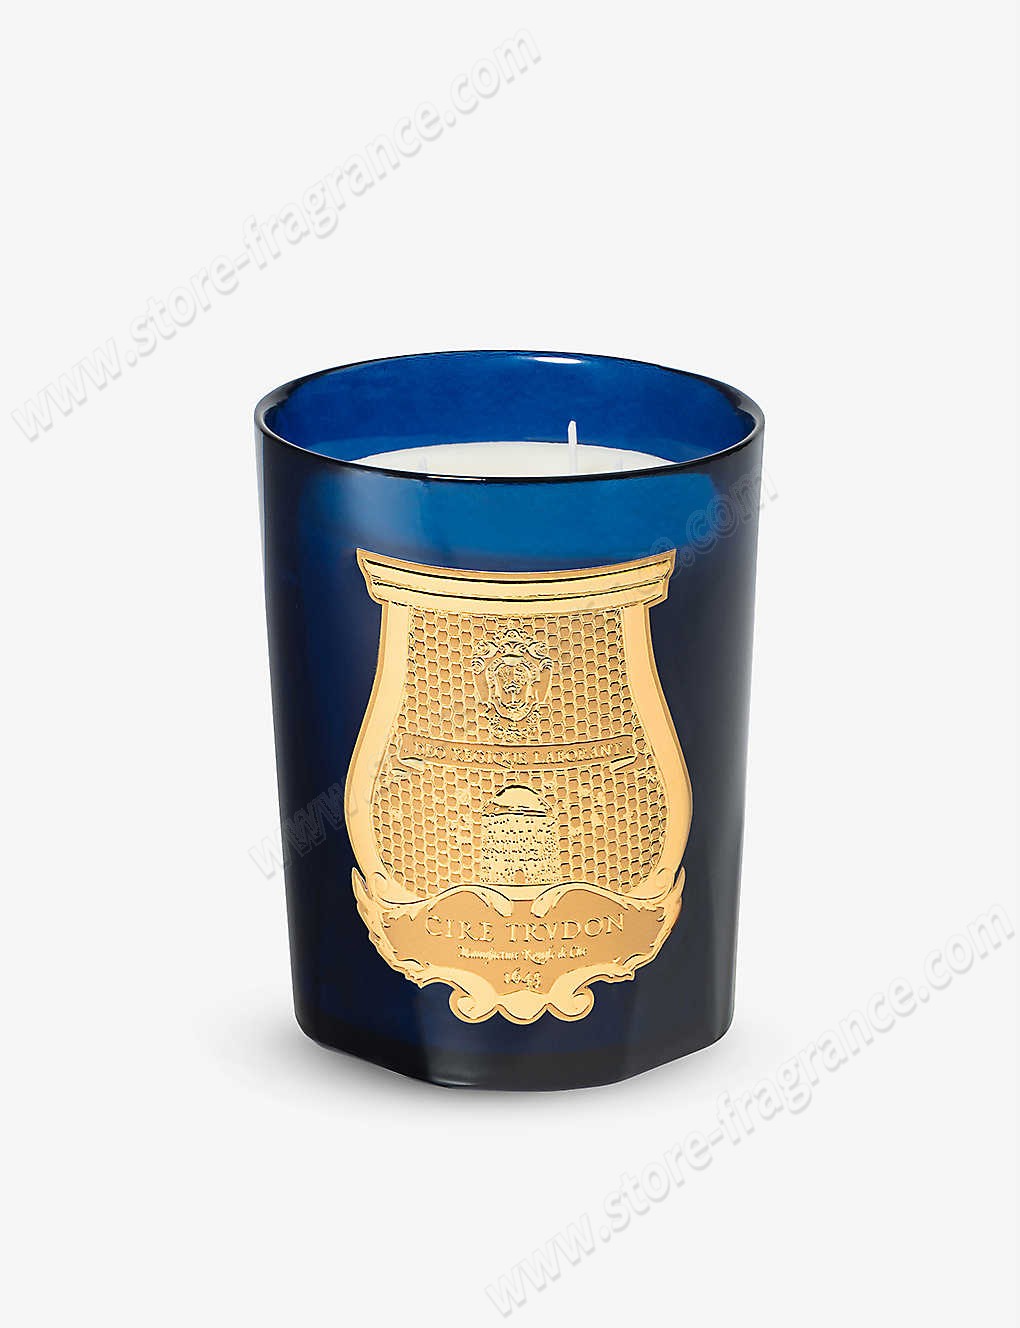 CIRE TRUDON/Reggio scented candle 800g ✿ Discount Store - CIRE TRUDON/Reggio scented candle 800g ✿ Discount Store